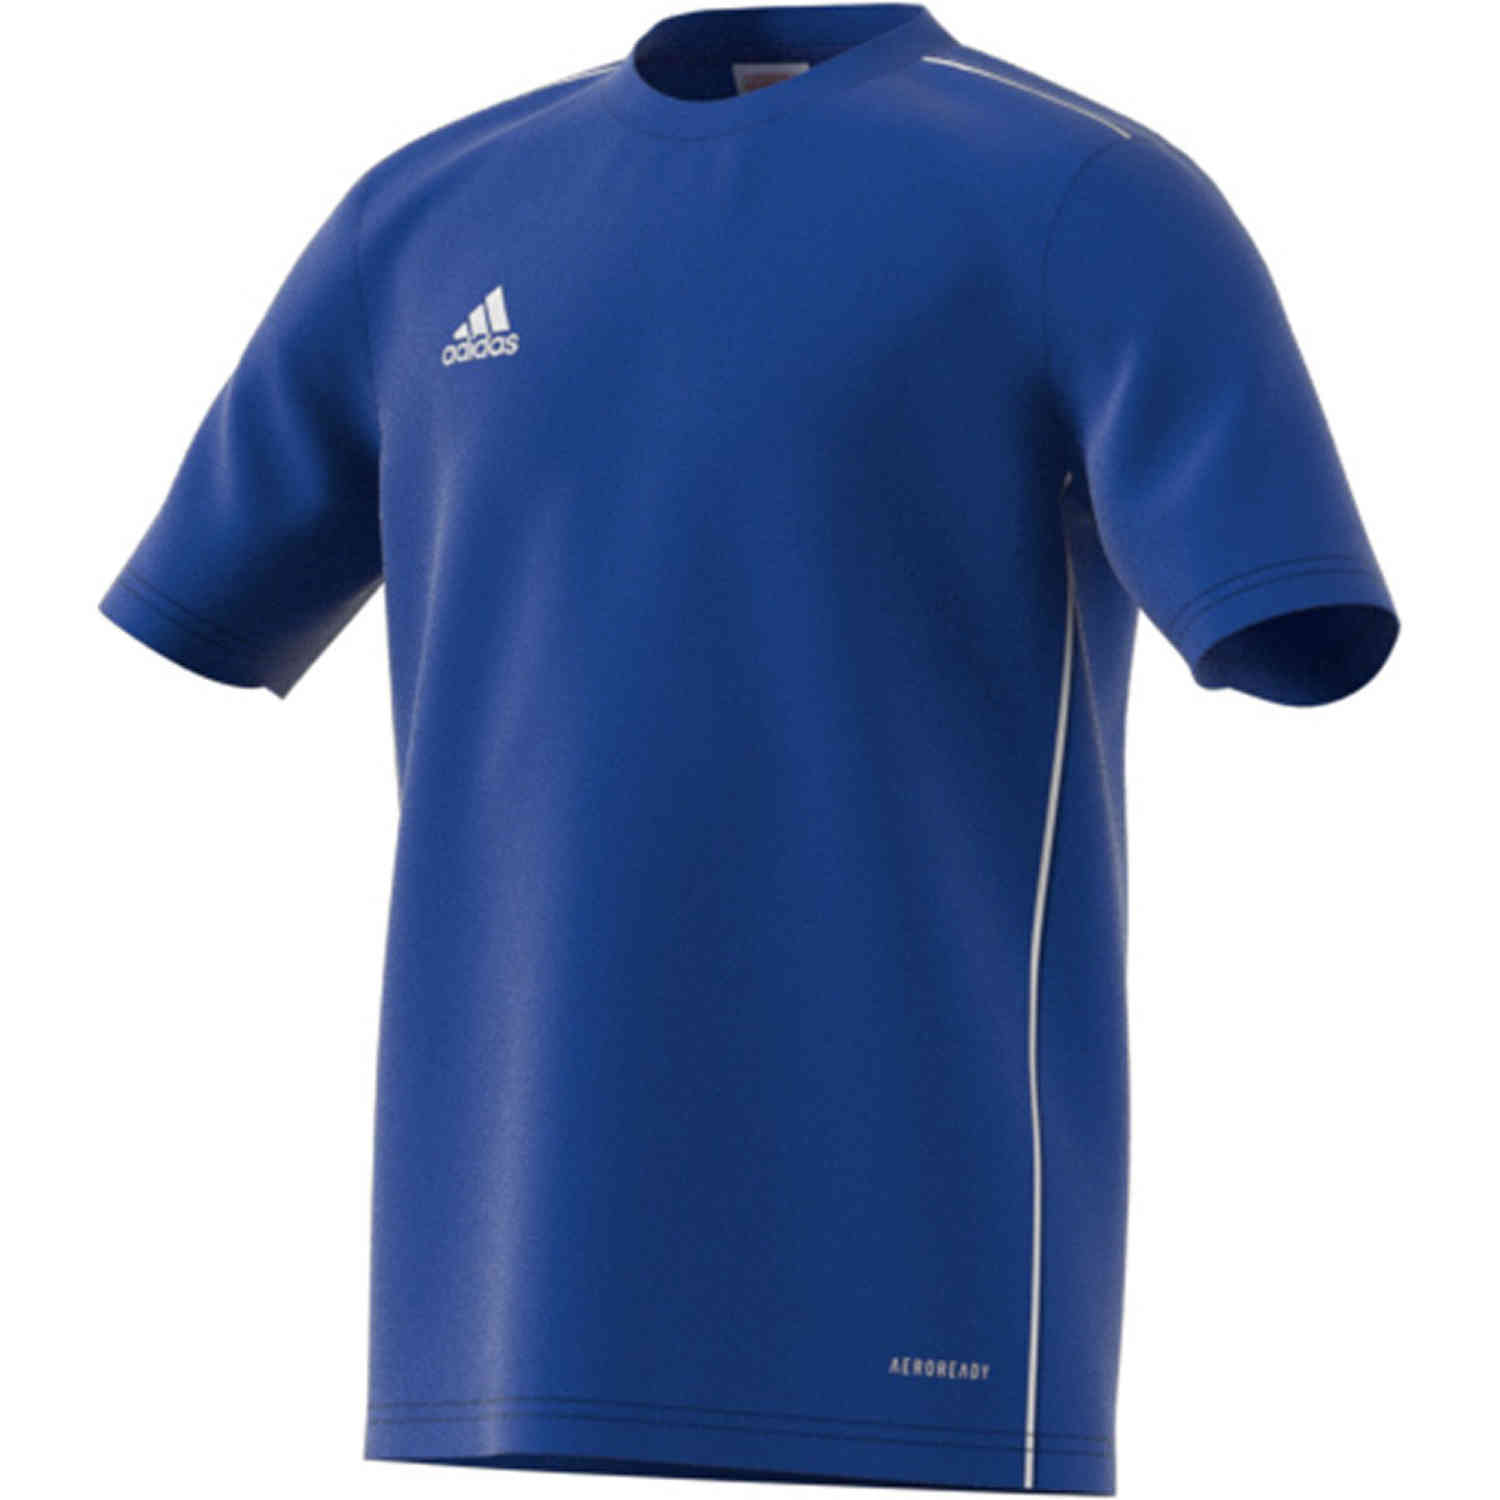 Kids adidas Core 18 Training Jersey - Bold Blue/White - SoccerPro